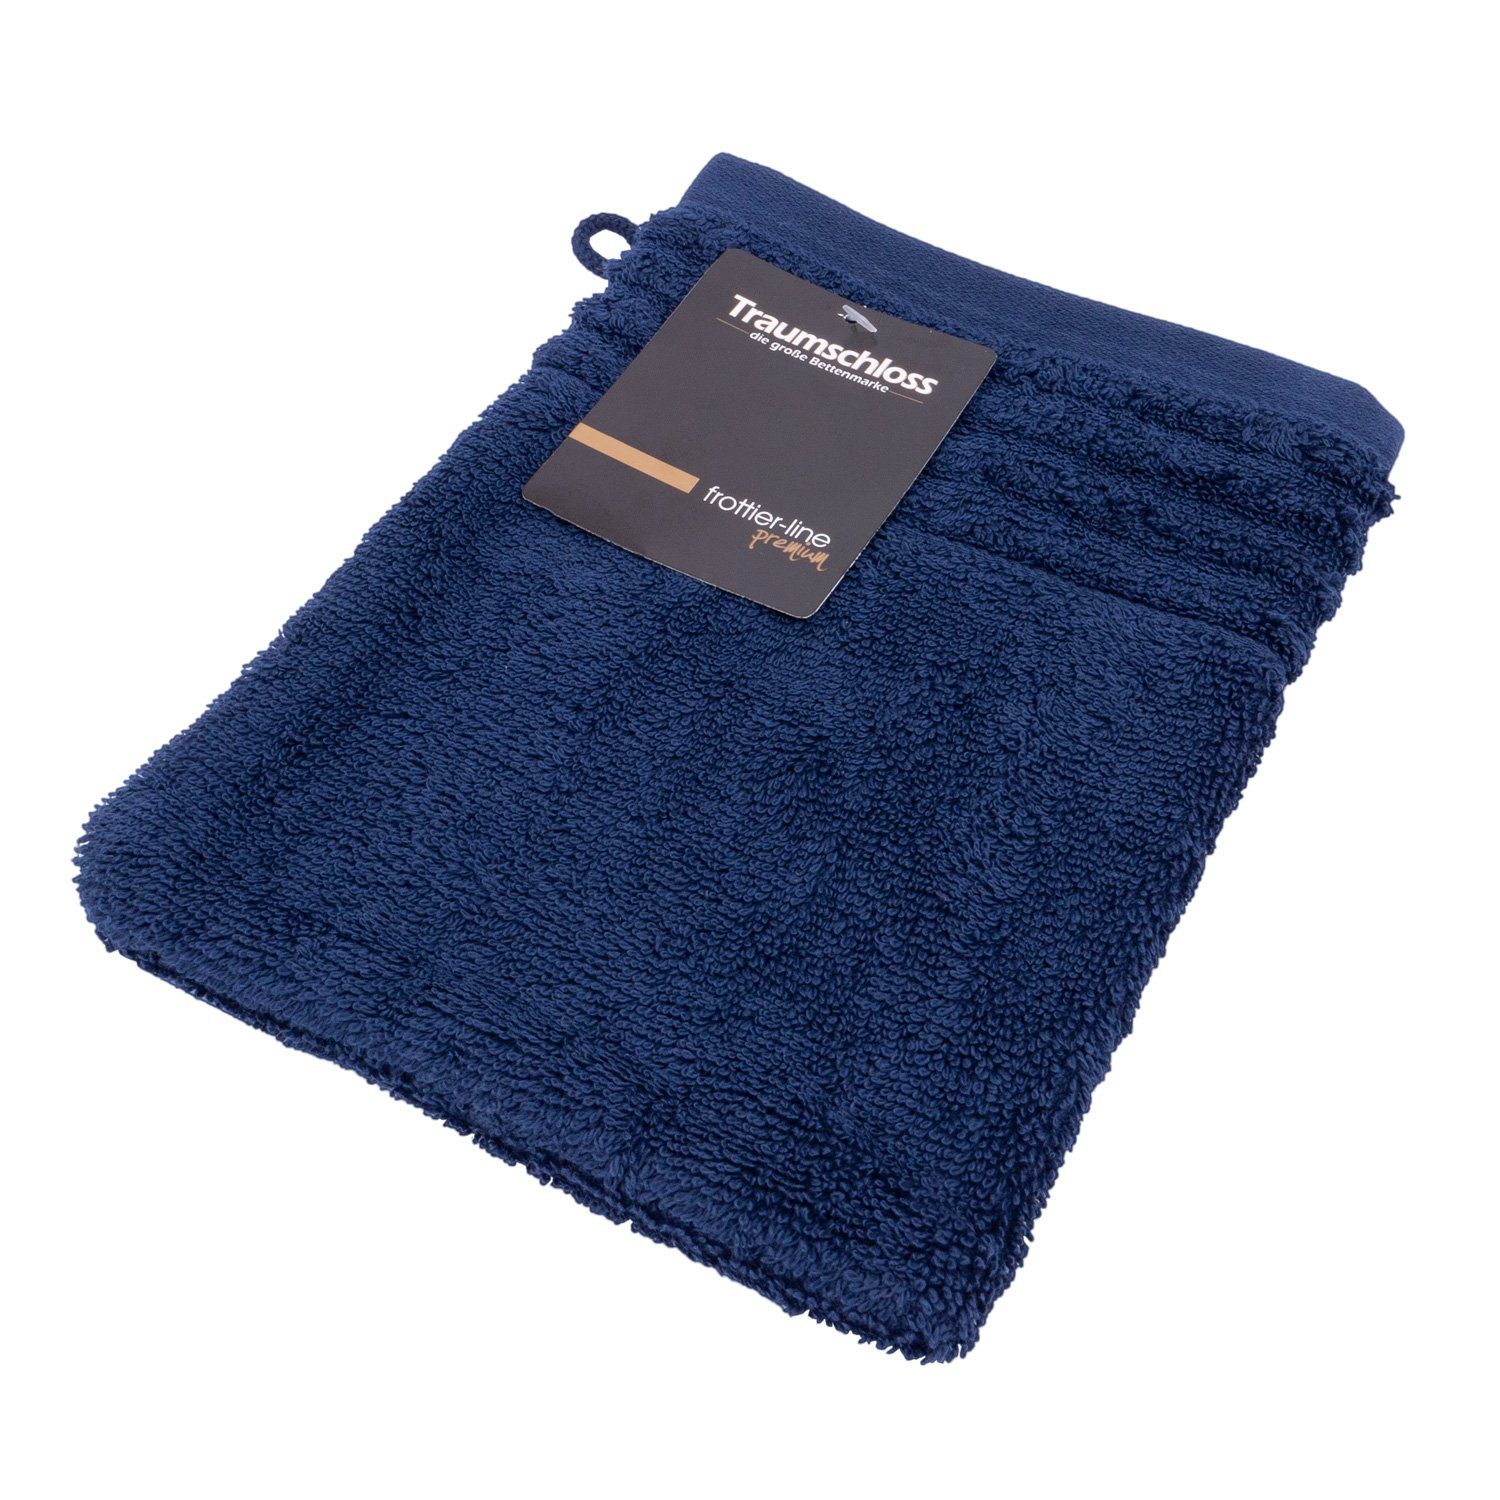 Traumschloss Waschlappen Premium-Line (1-tlg), 100% amerikanische Supima Baumwolle mit 600g/m² dunkelblau